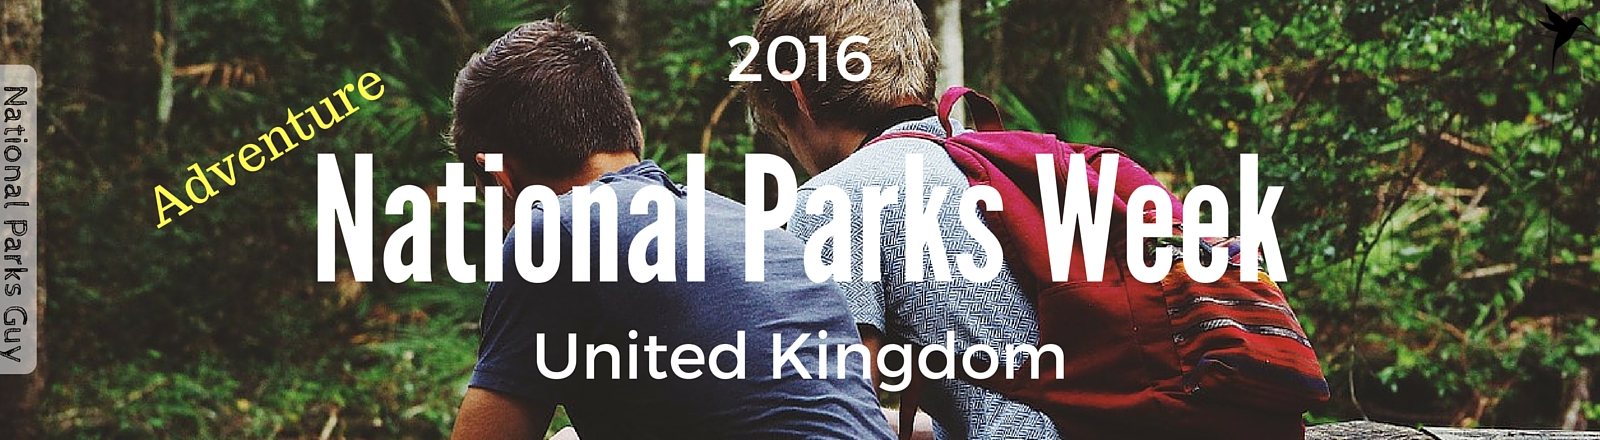 2016 UK National Parks Week, National Parks Guy, Share, Information, Stories